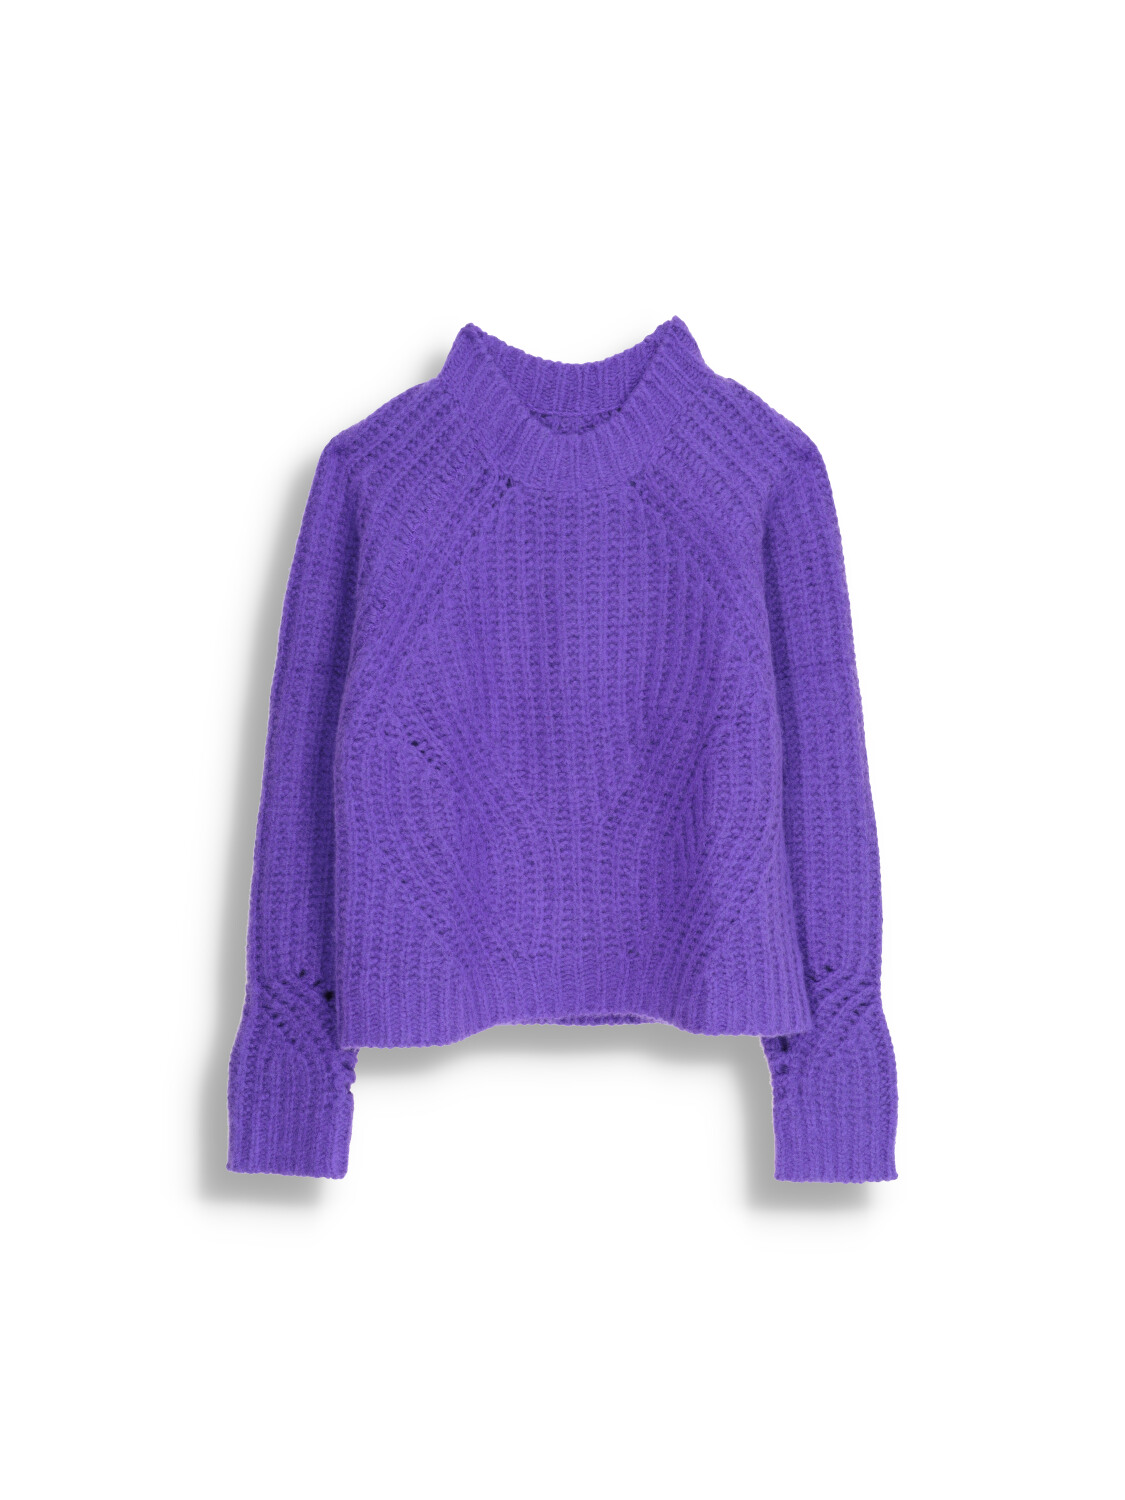 Sweat Shy Amara - Cashmere Knit Sweater